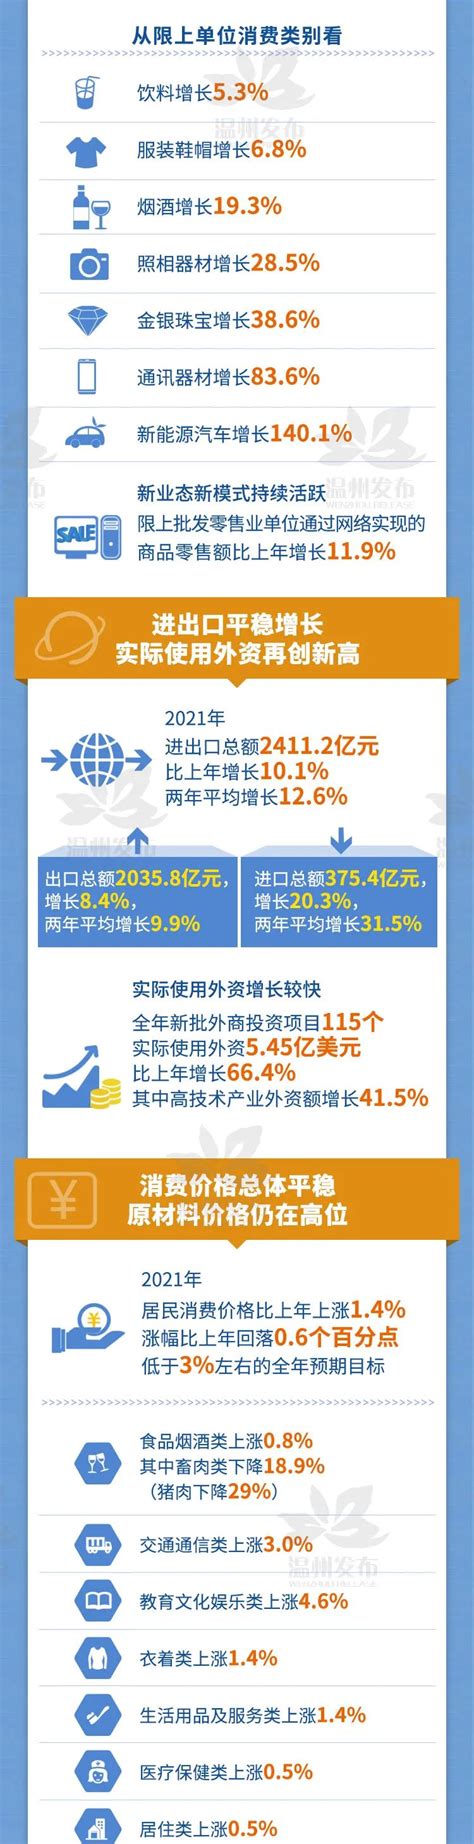 2021年温州经济运行情况发布_腾讯新闻